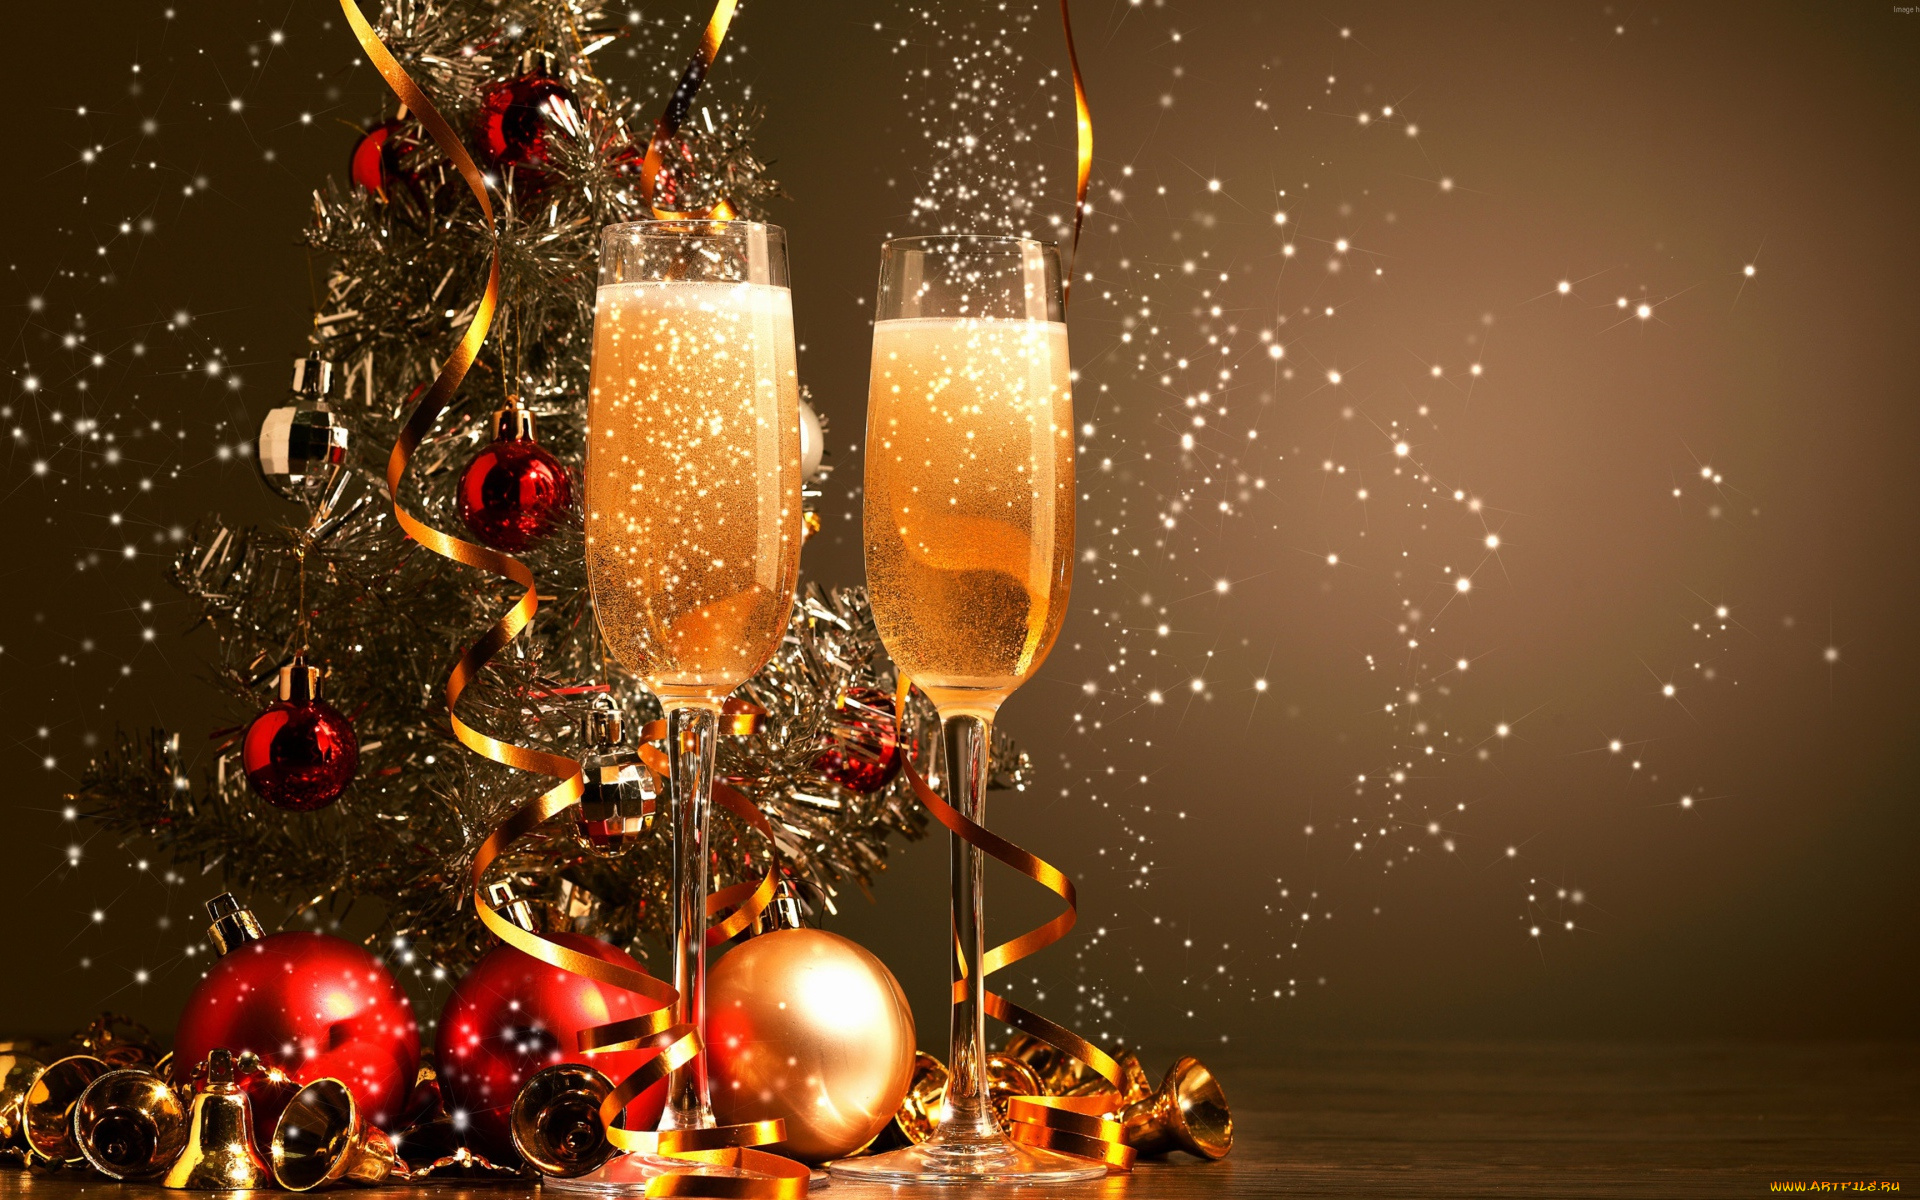 праздничные, угощения, два, фужера, с, шампанским, на, фоне, праздничной, елки